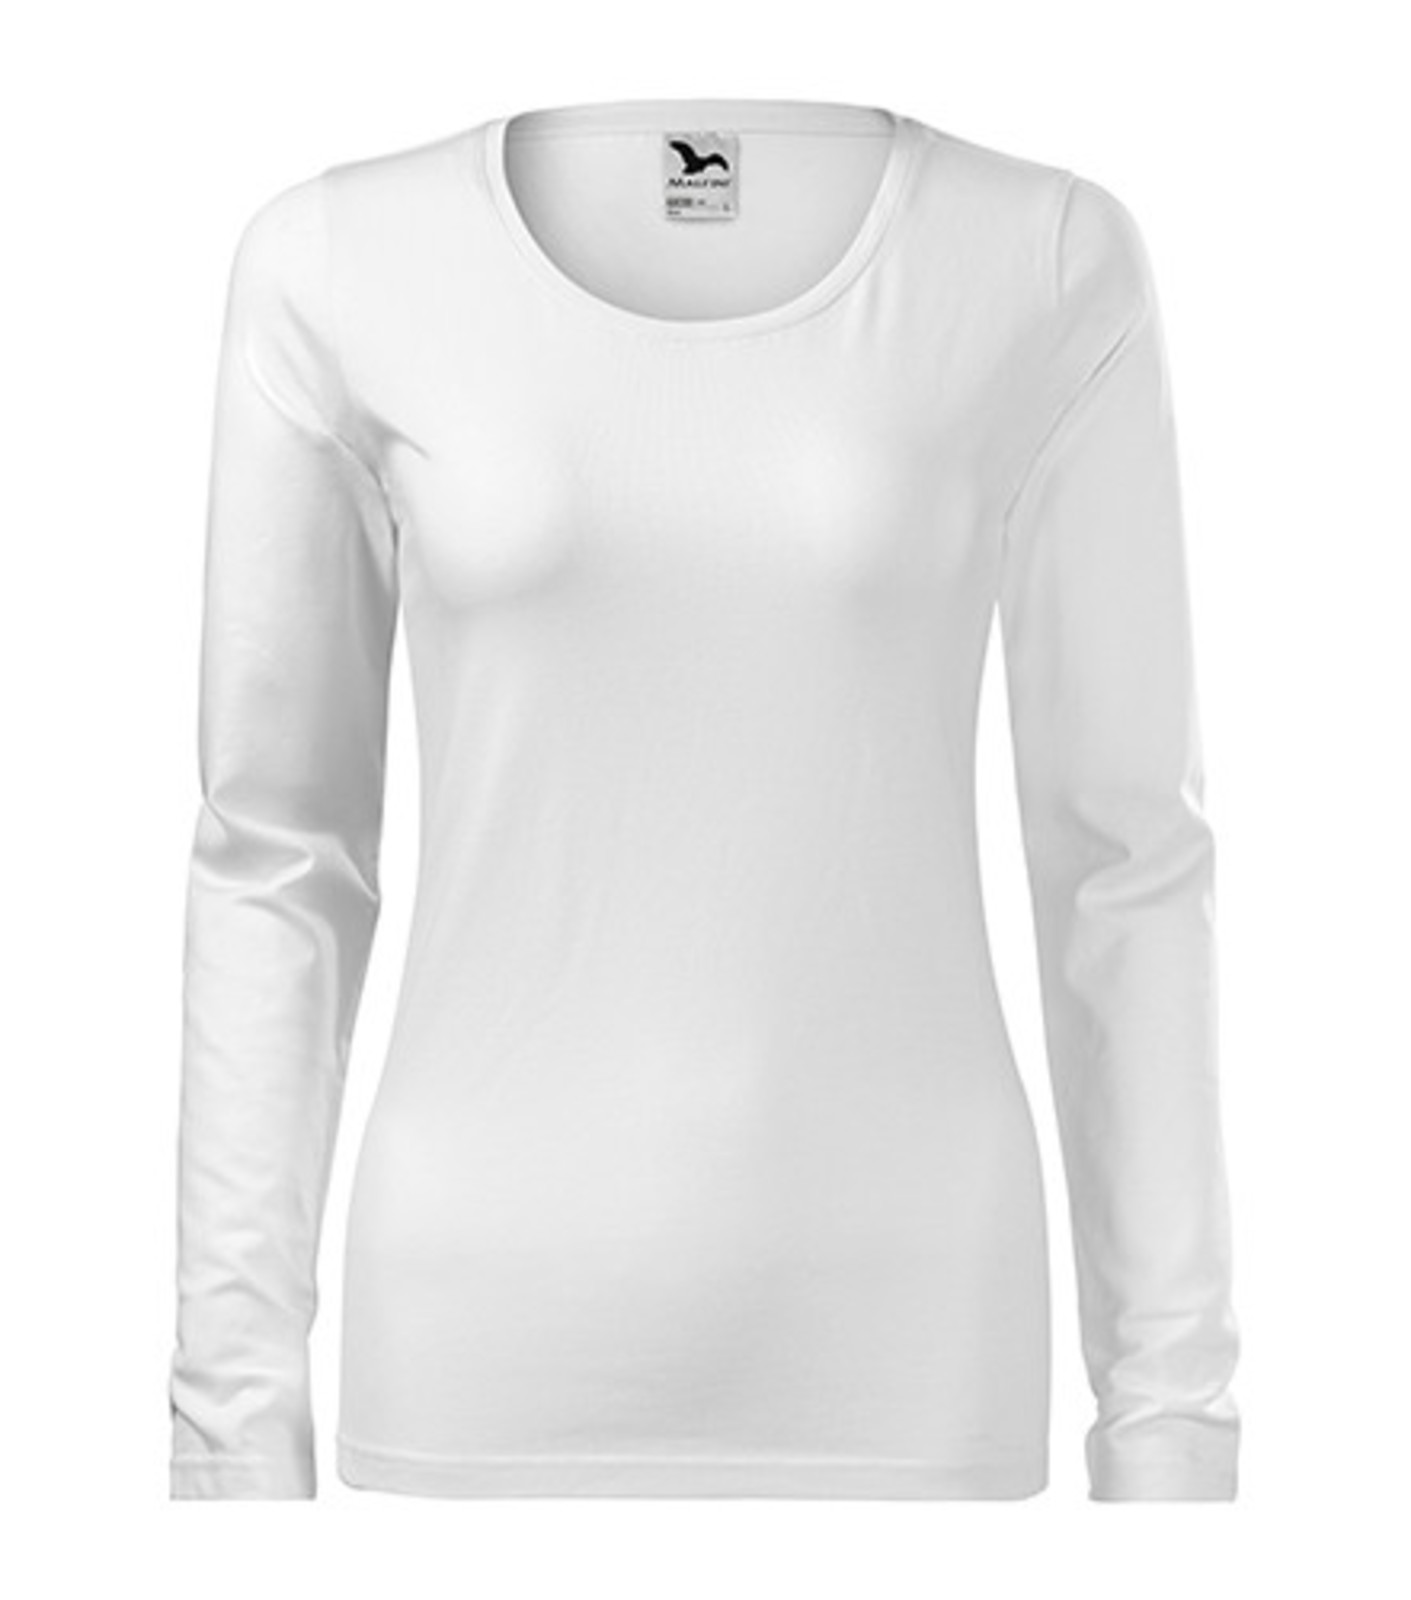 Dámske tričko s dlhým rukávom Adler Slim 139 - veľkosť: 3XL, farba: biela